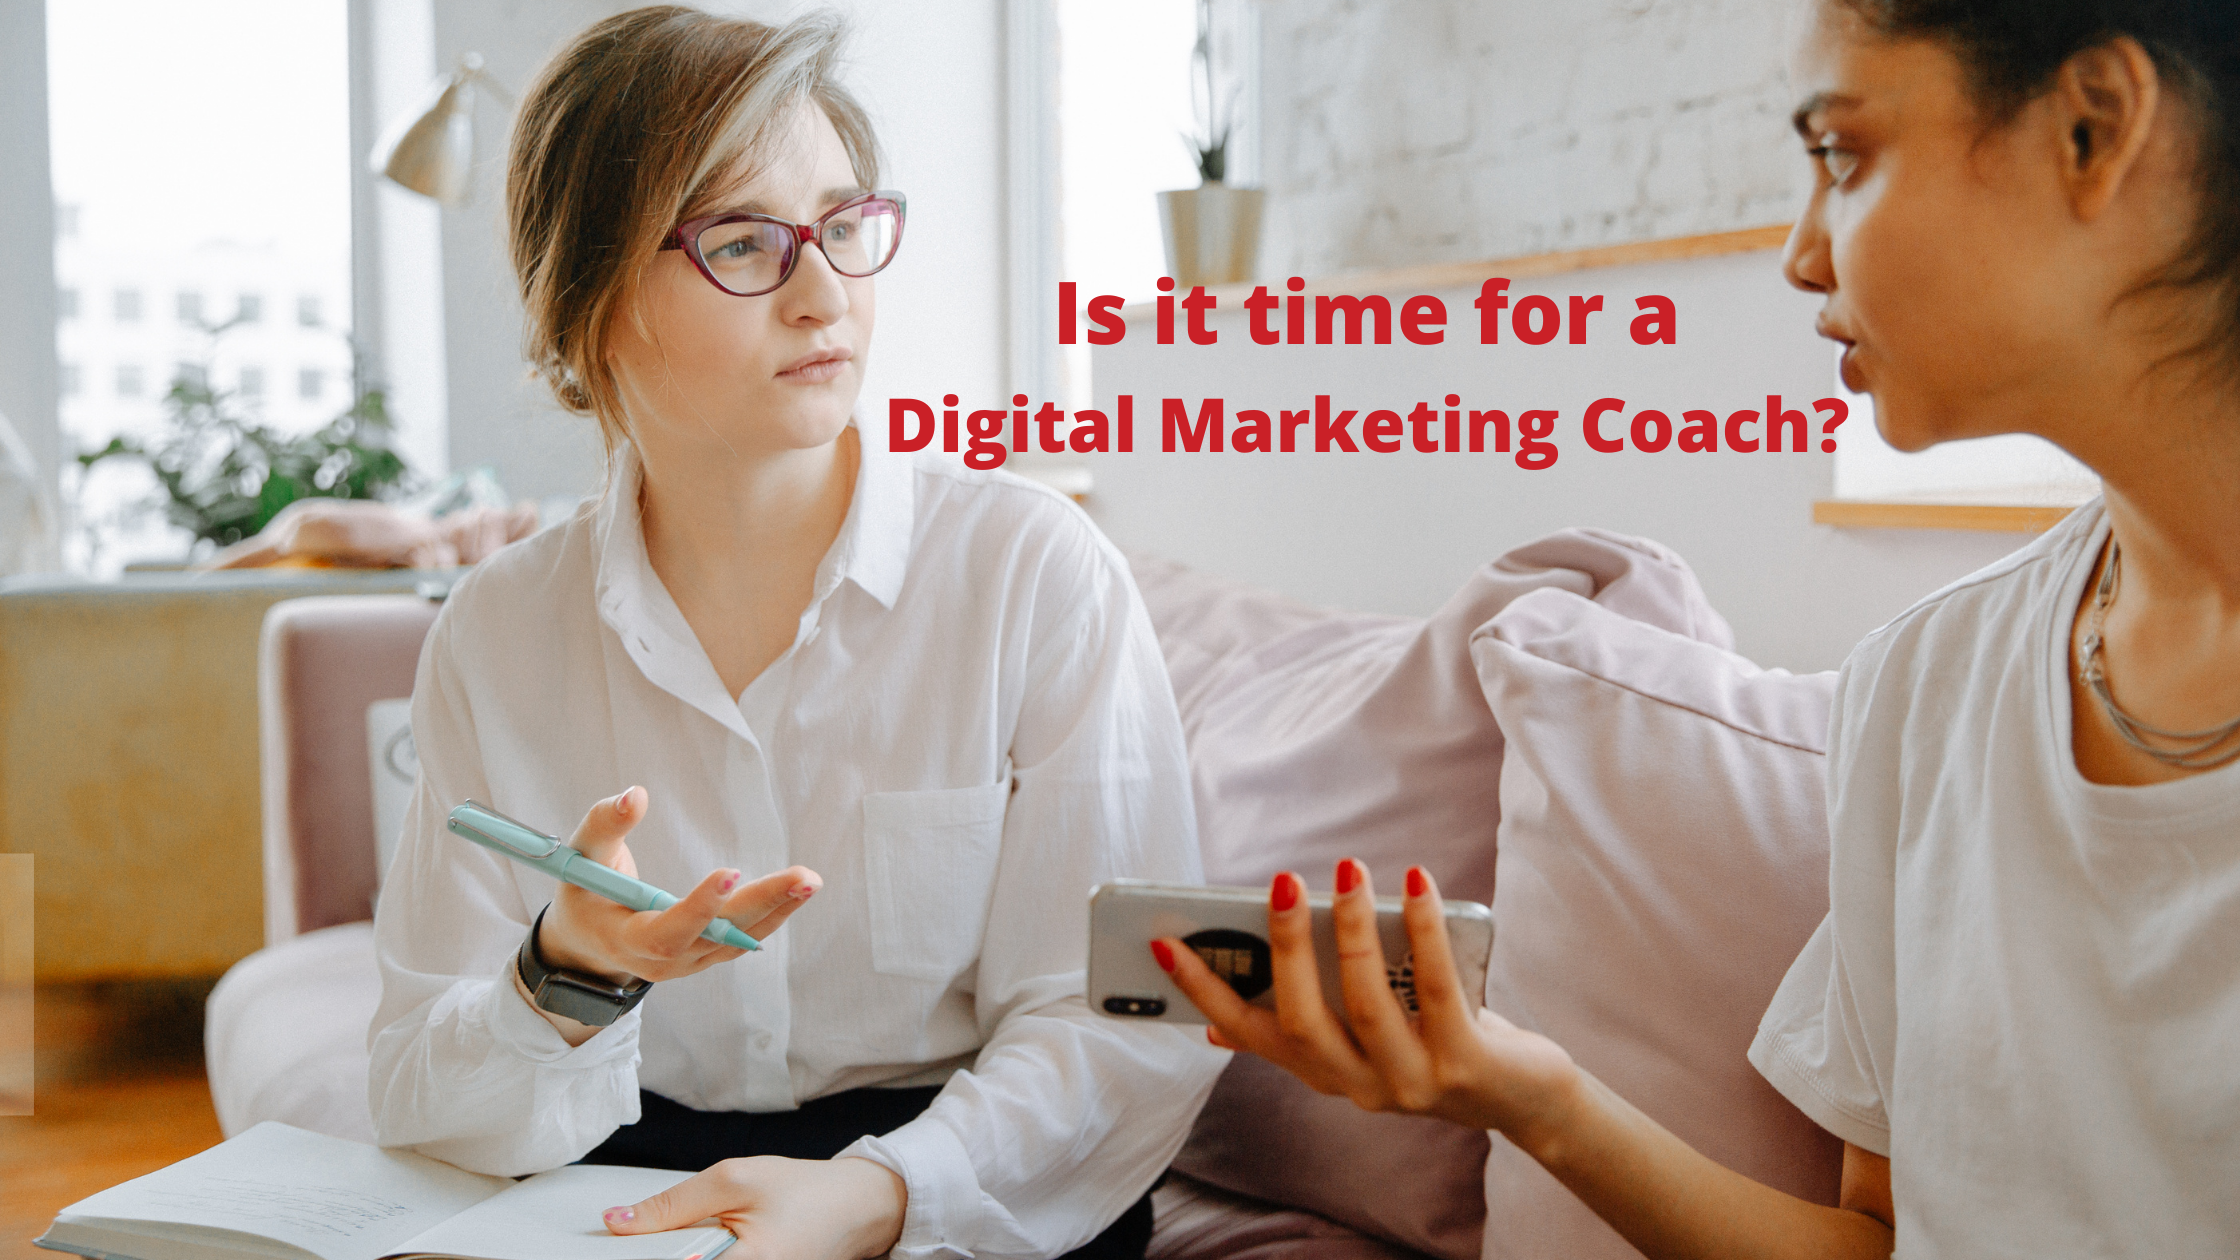 Digital Marketing Coach